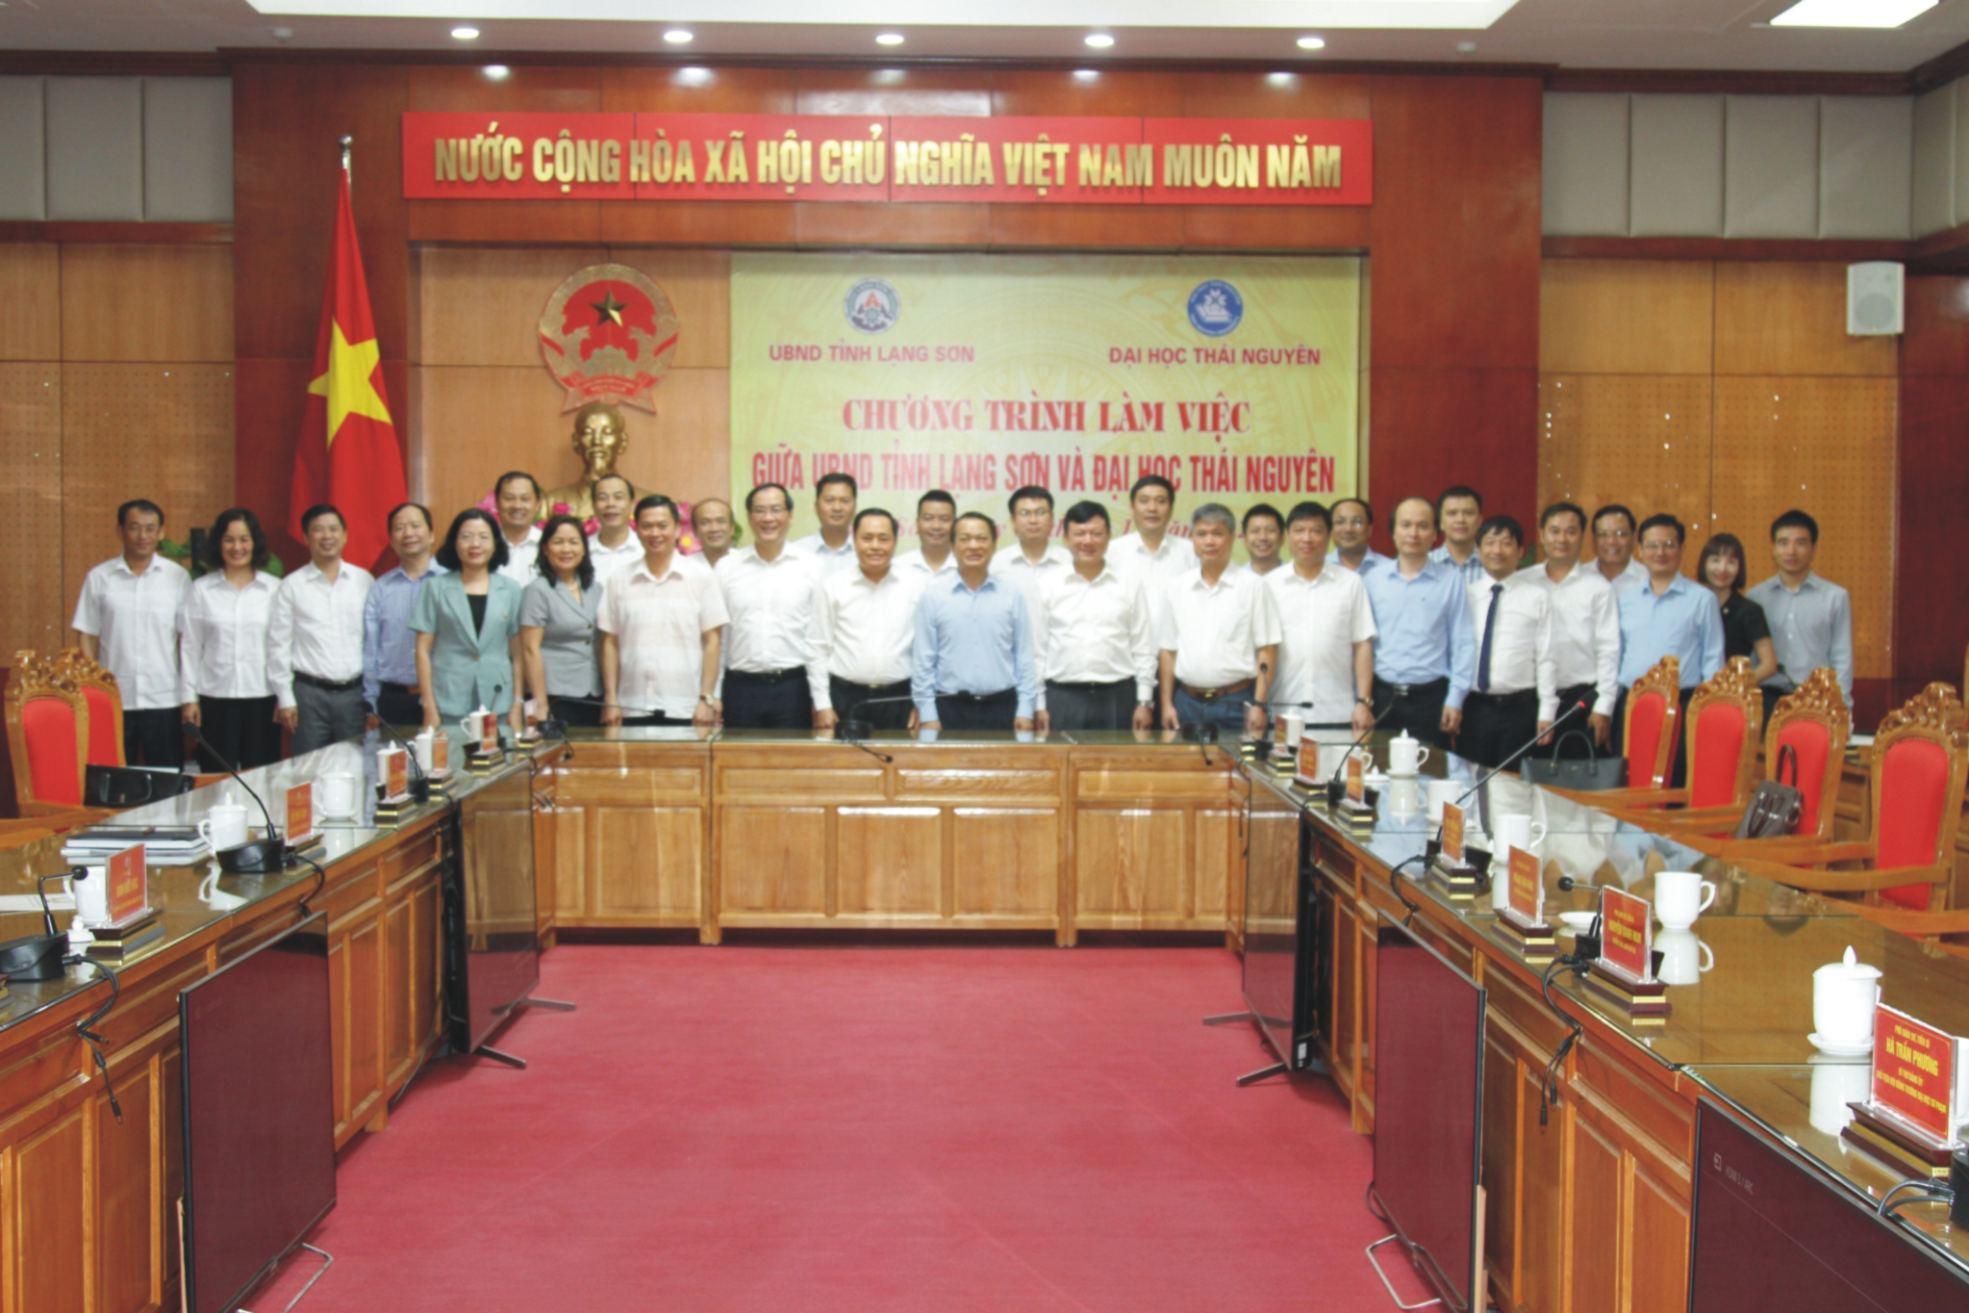 Đại học Thái Nguyên làm việc với UBND tỉnh Lạng Sơn